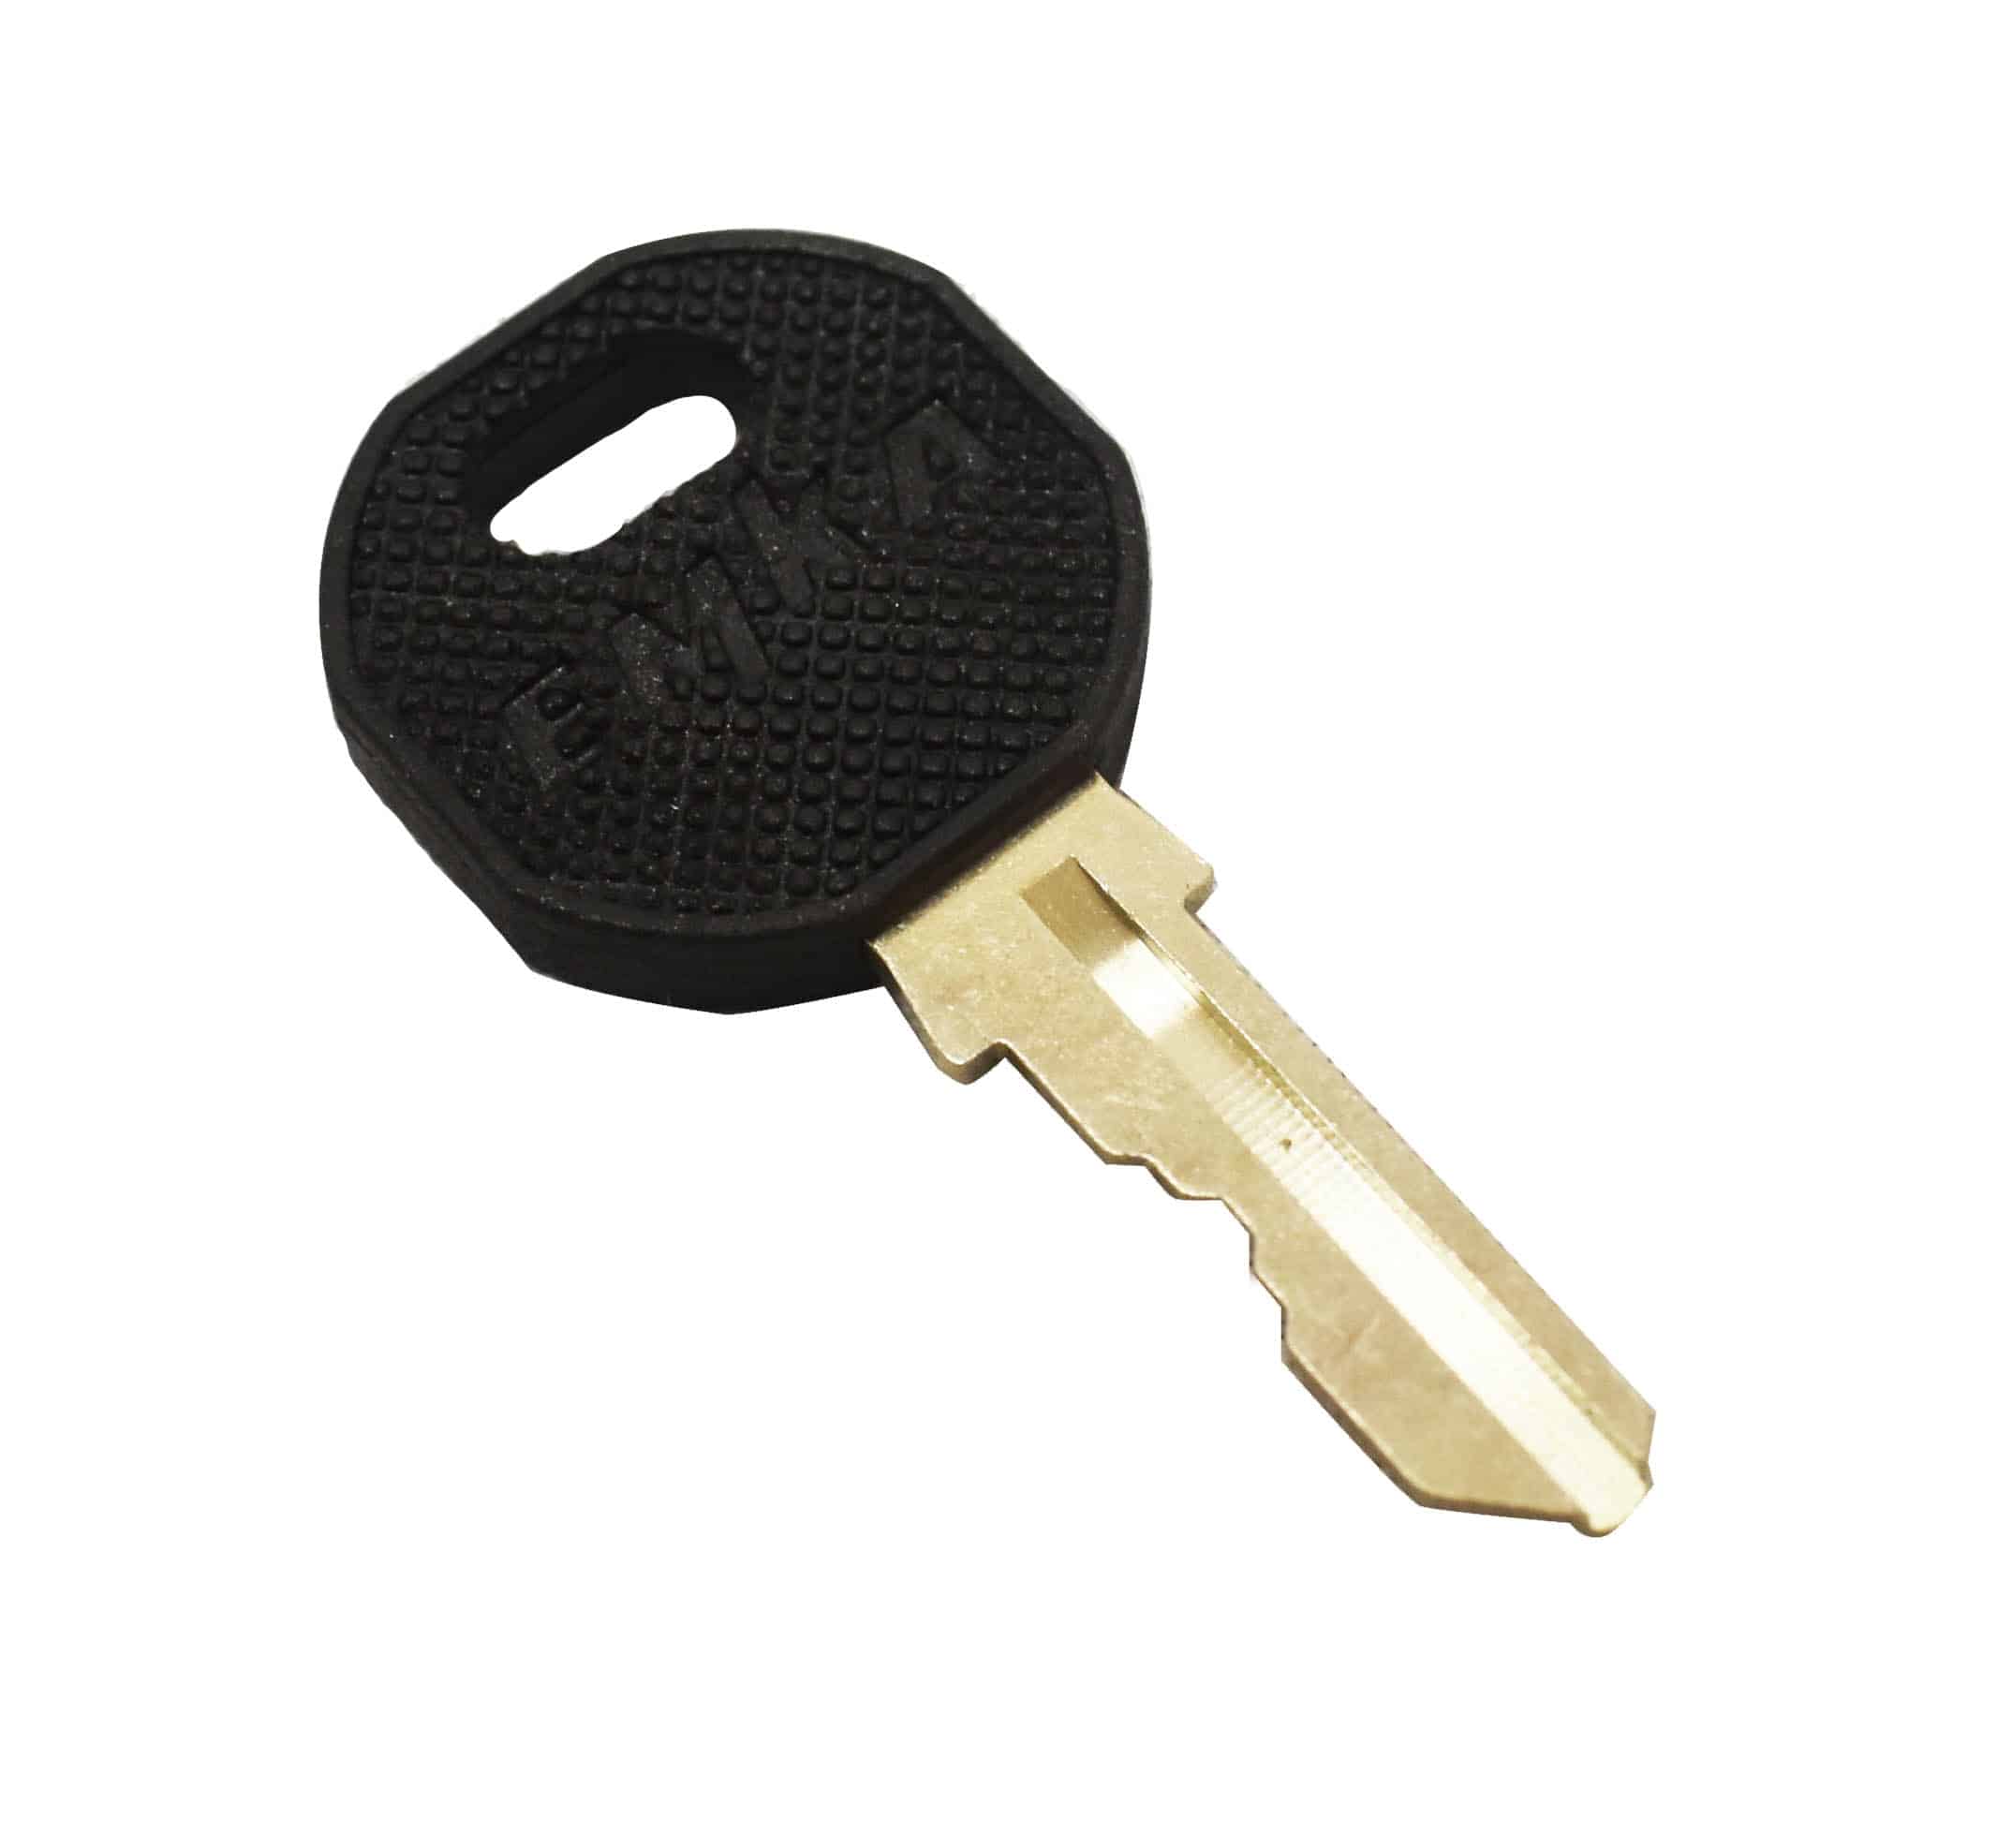 Spare keys and locks for mild steel lockers